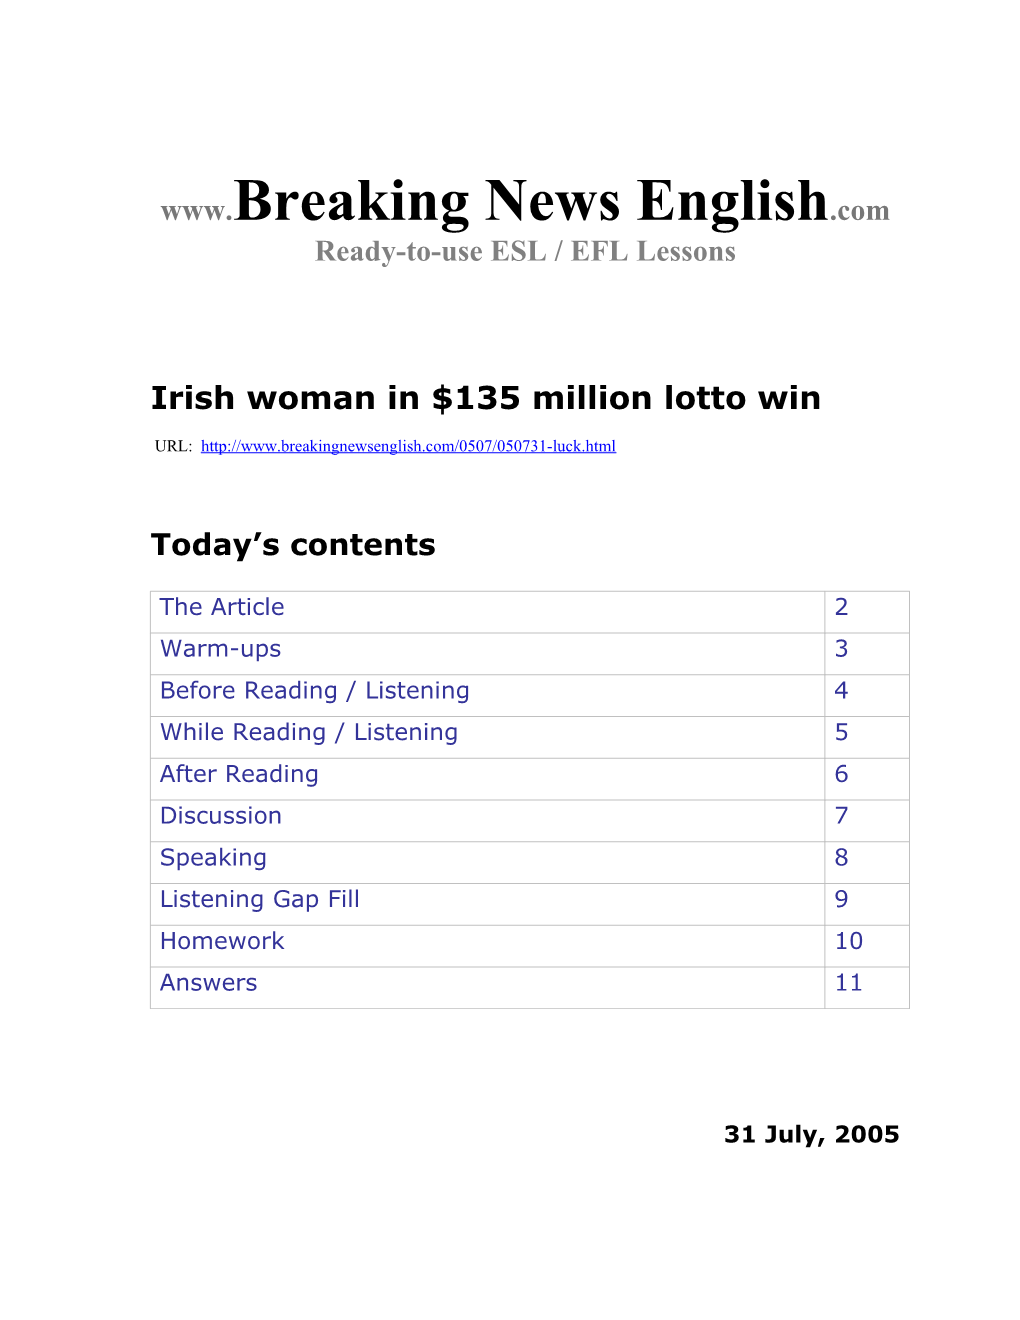 Irish Woman in $135 Million Lotto Win